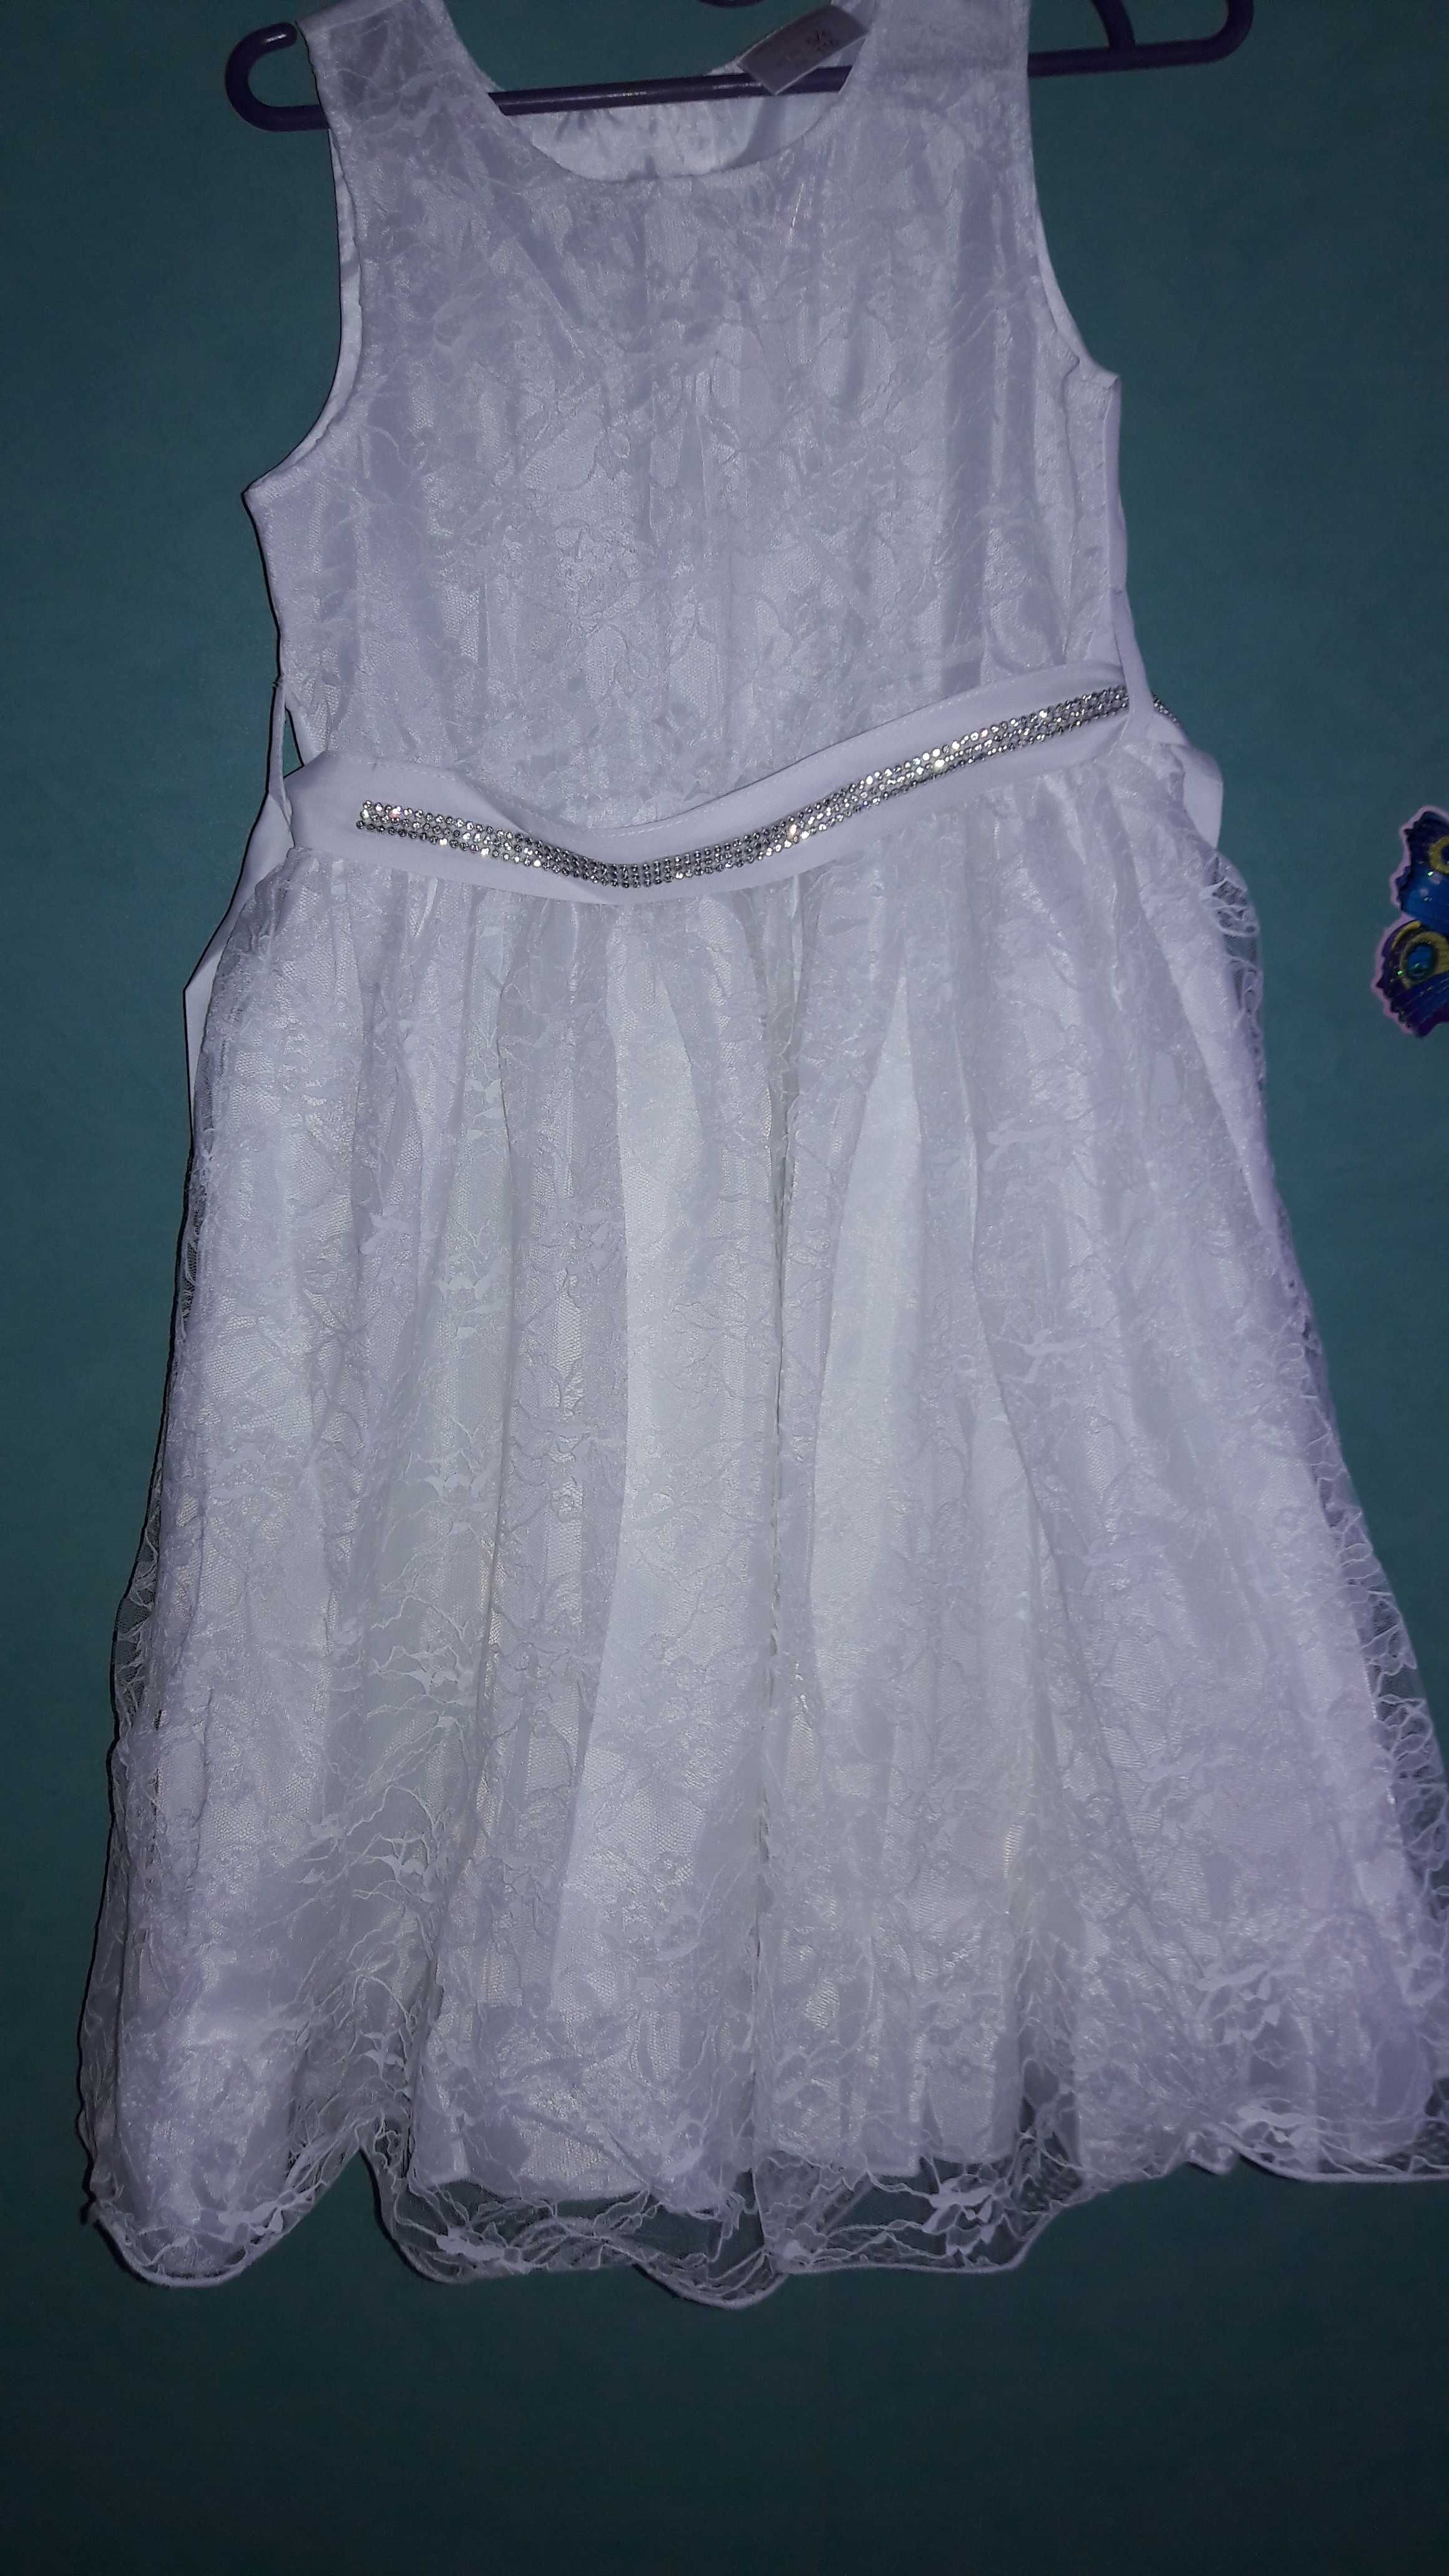 Плаття святкове Глория Джинс 116 розмір. В ідеальному стані!